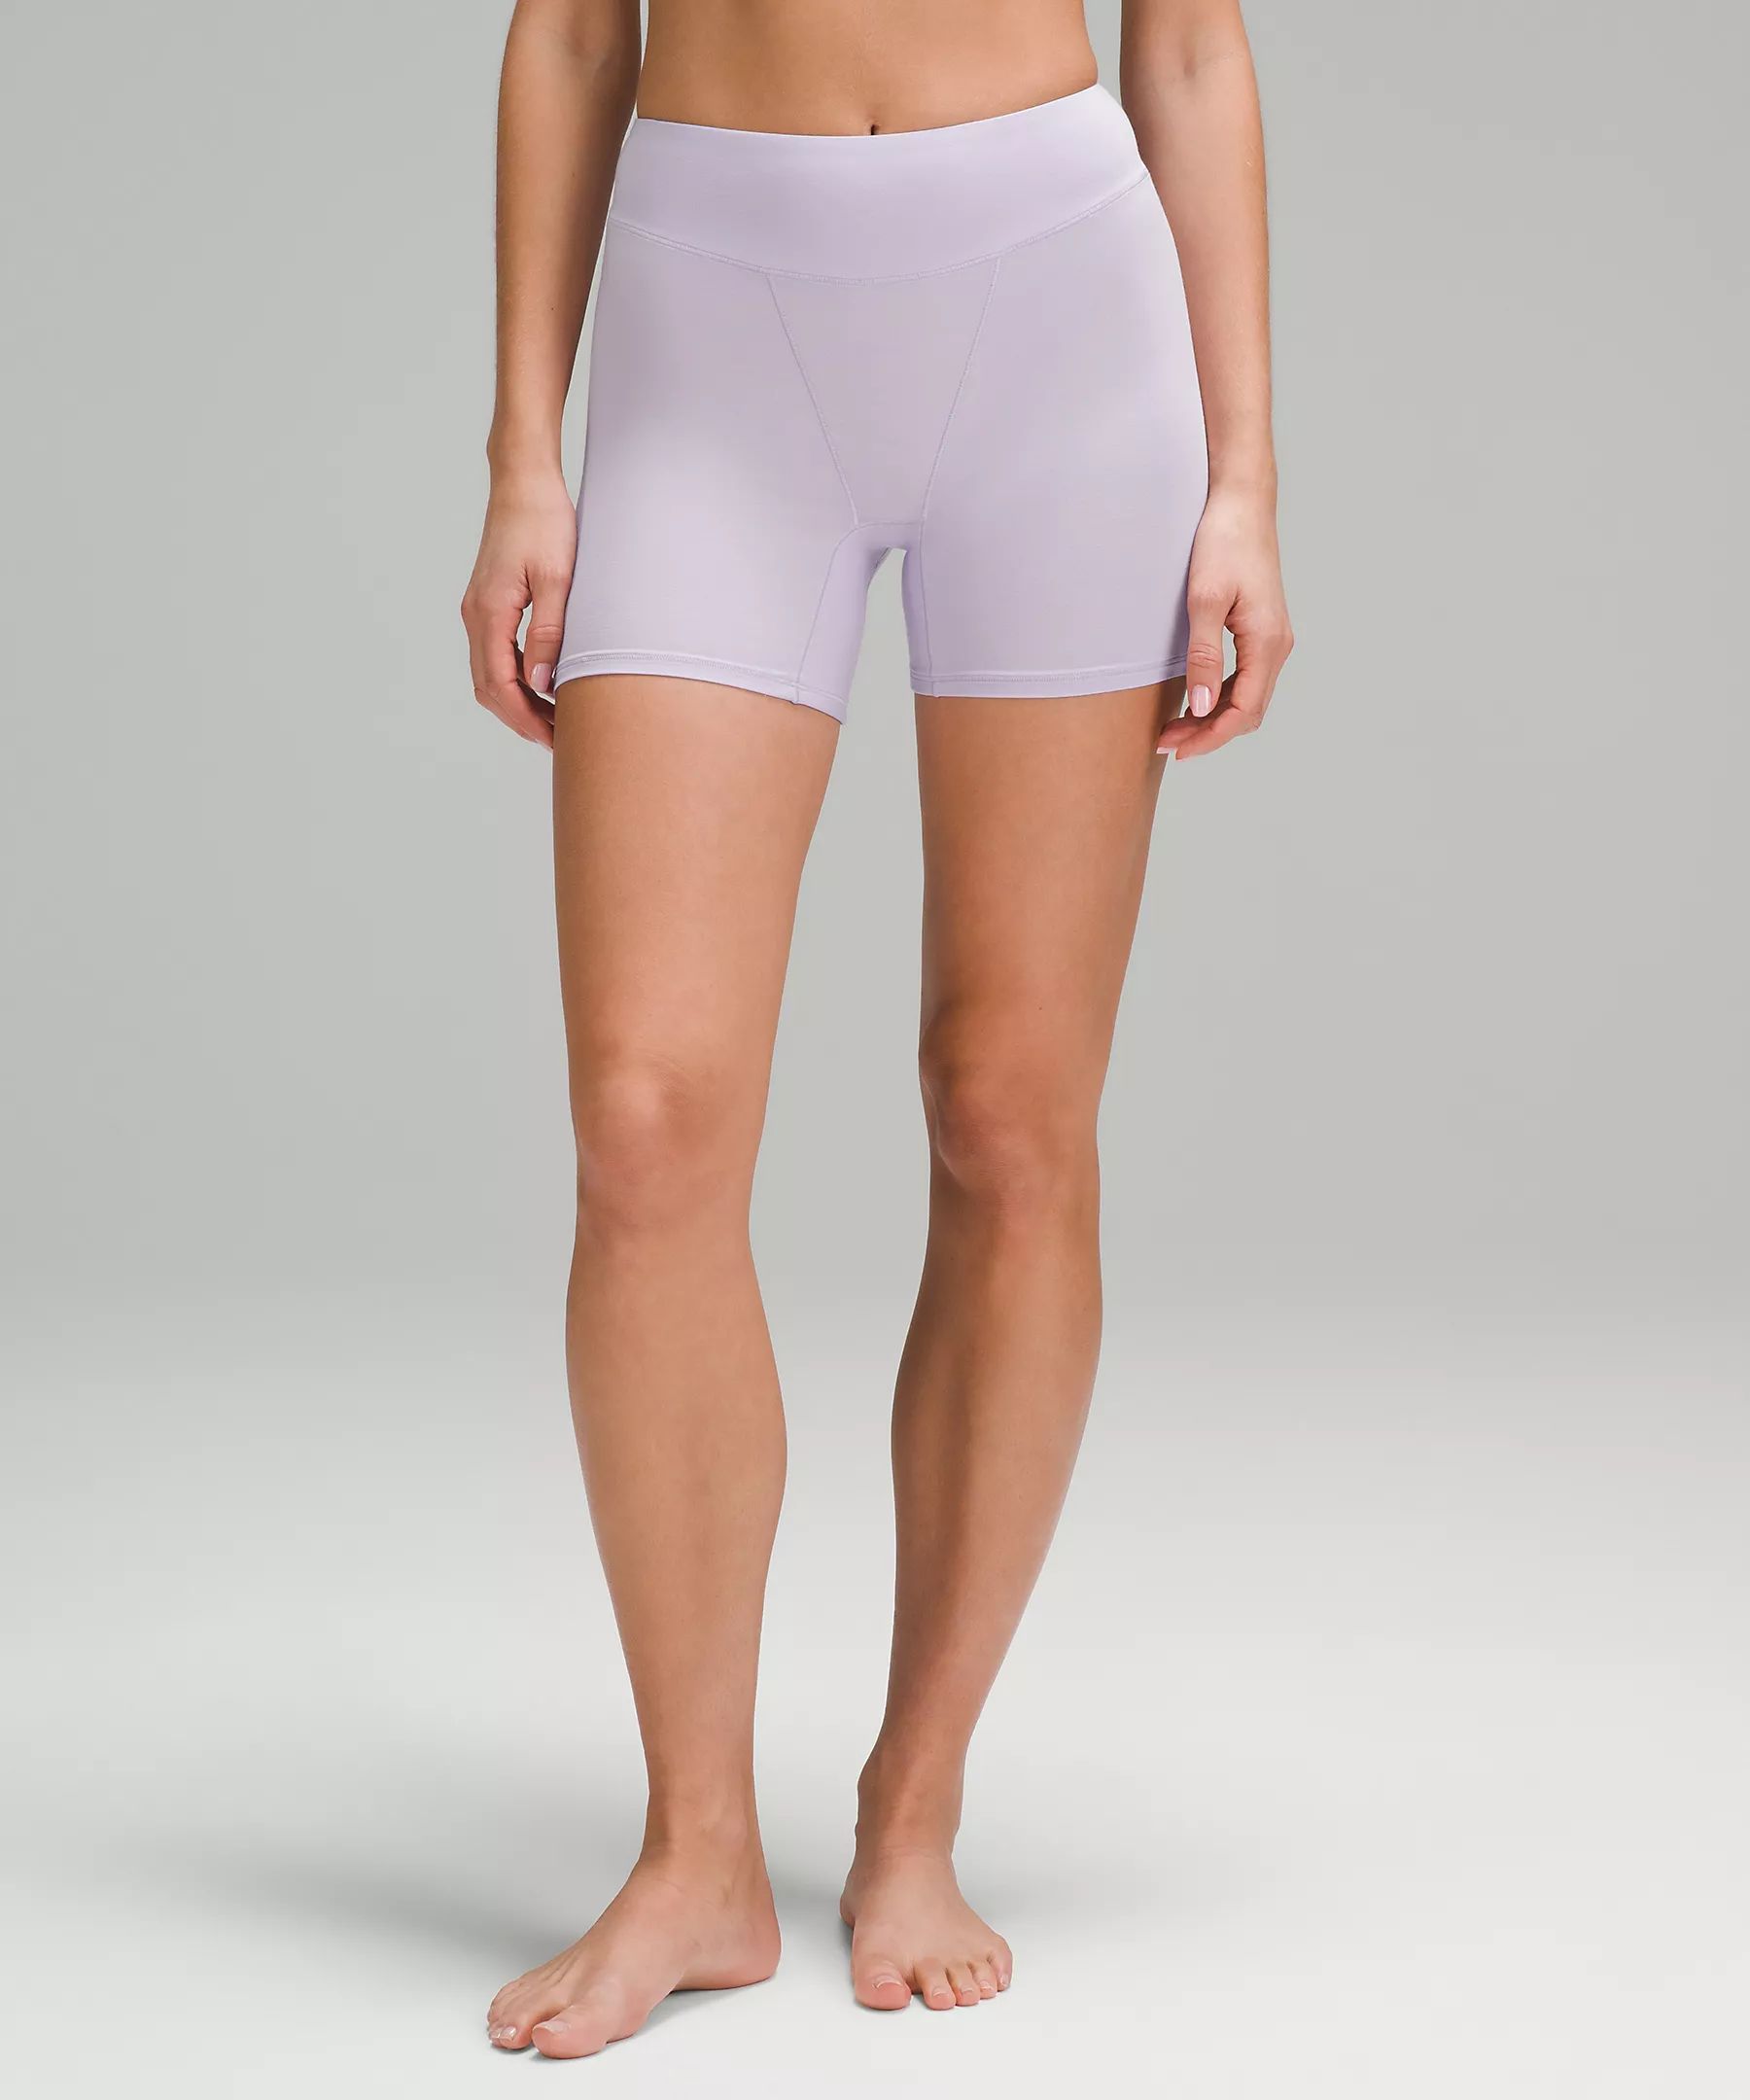 UnderEase Super-High-Rise Shortie Underwear | Lululemon (US)